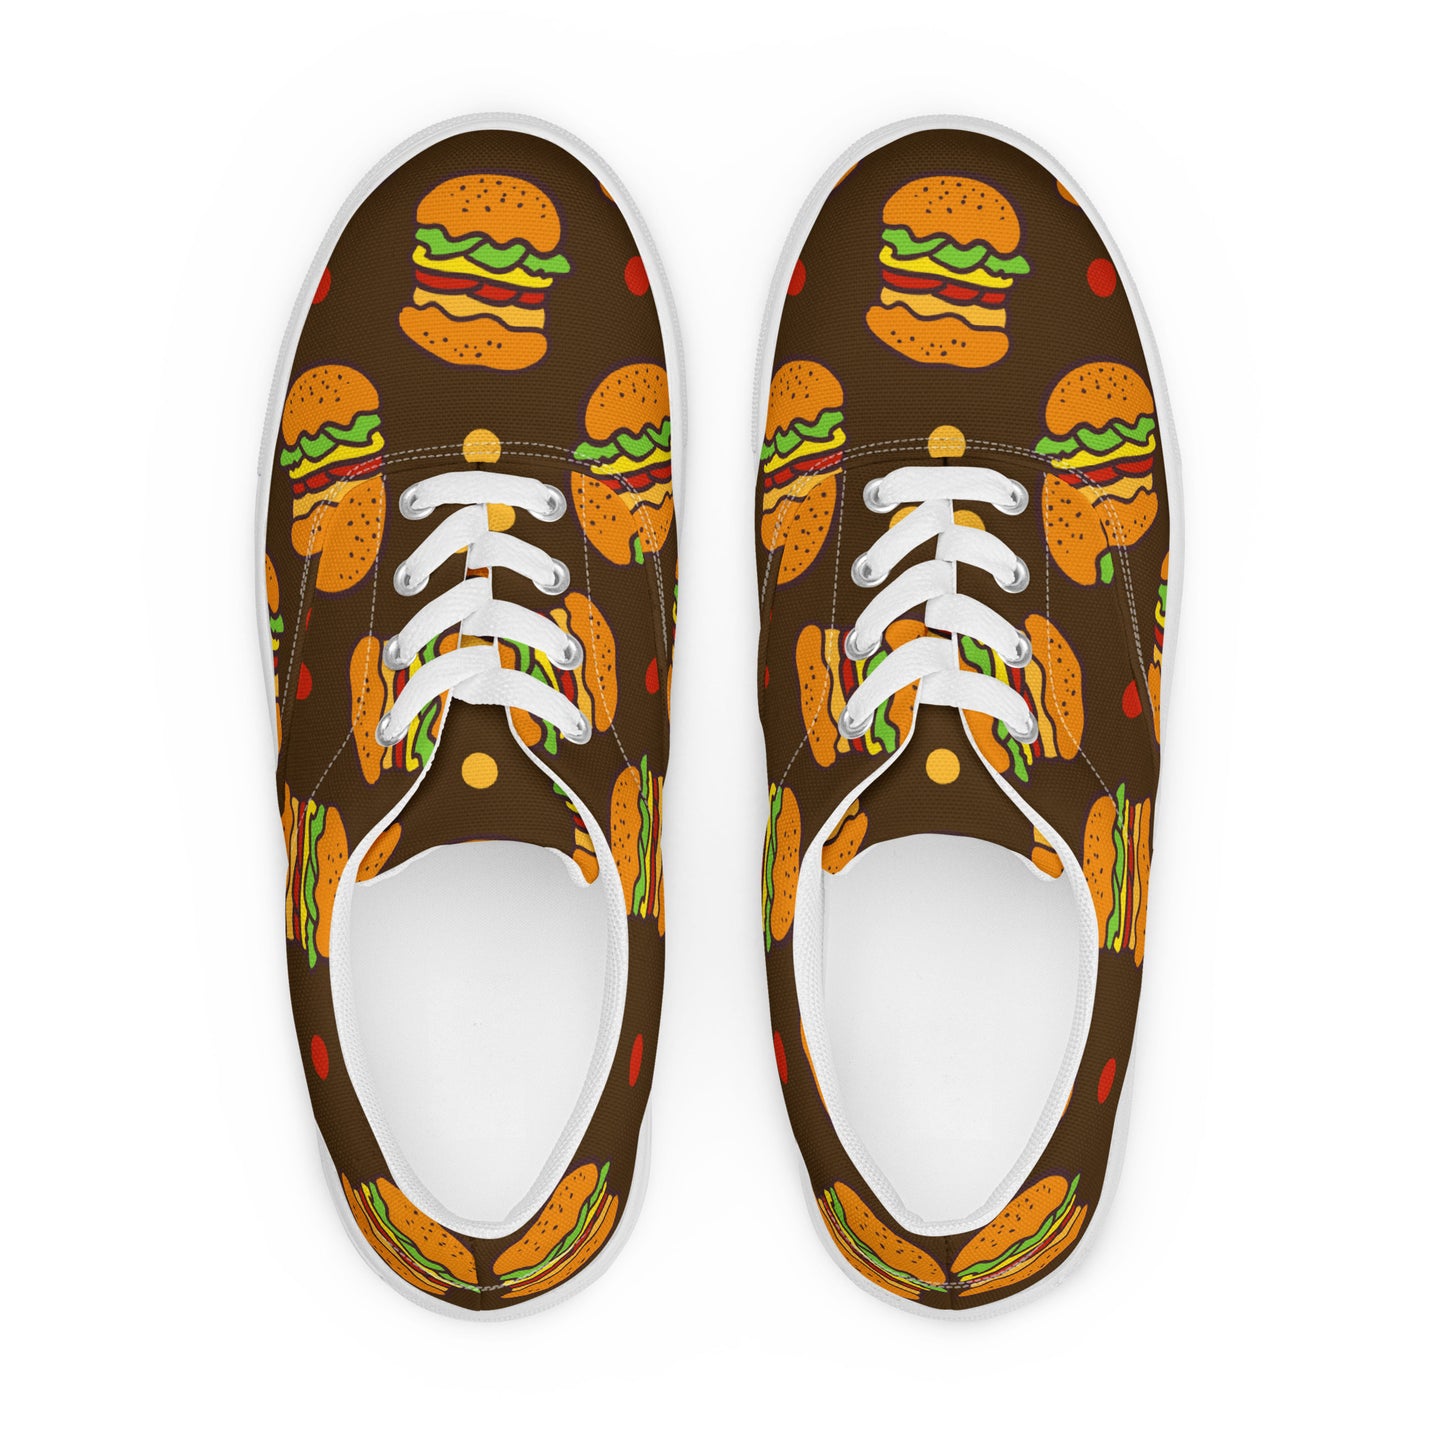 Burgers - Men’s lace-up canvas shoes Mens Lace Up Canvas Shoes Food